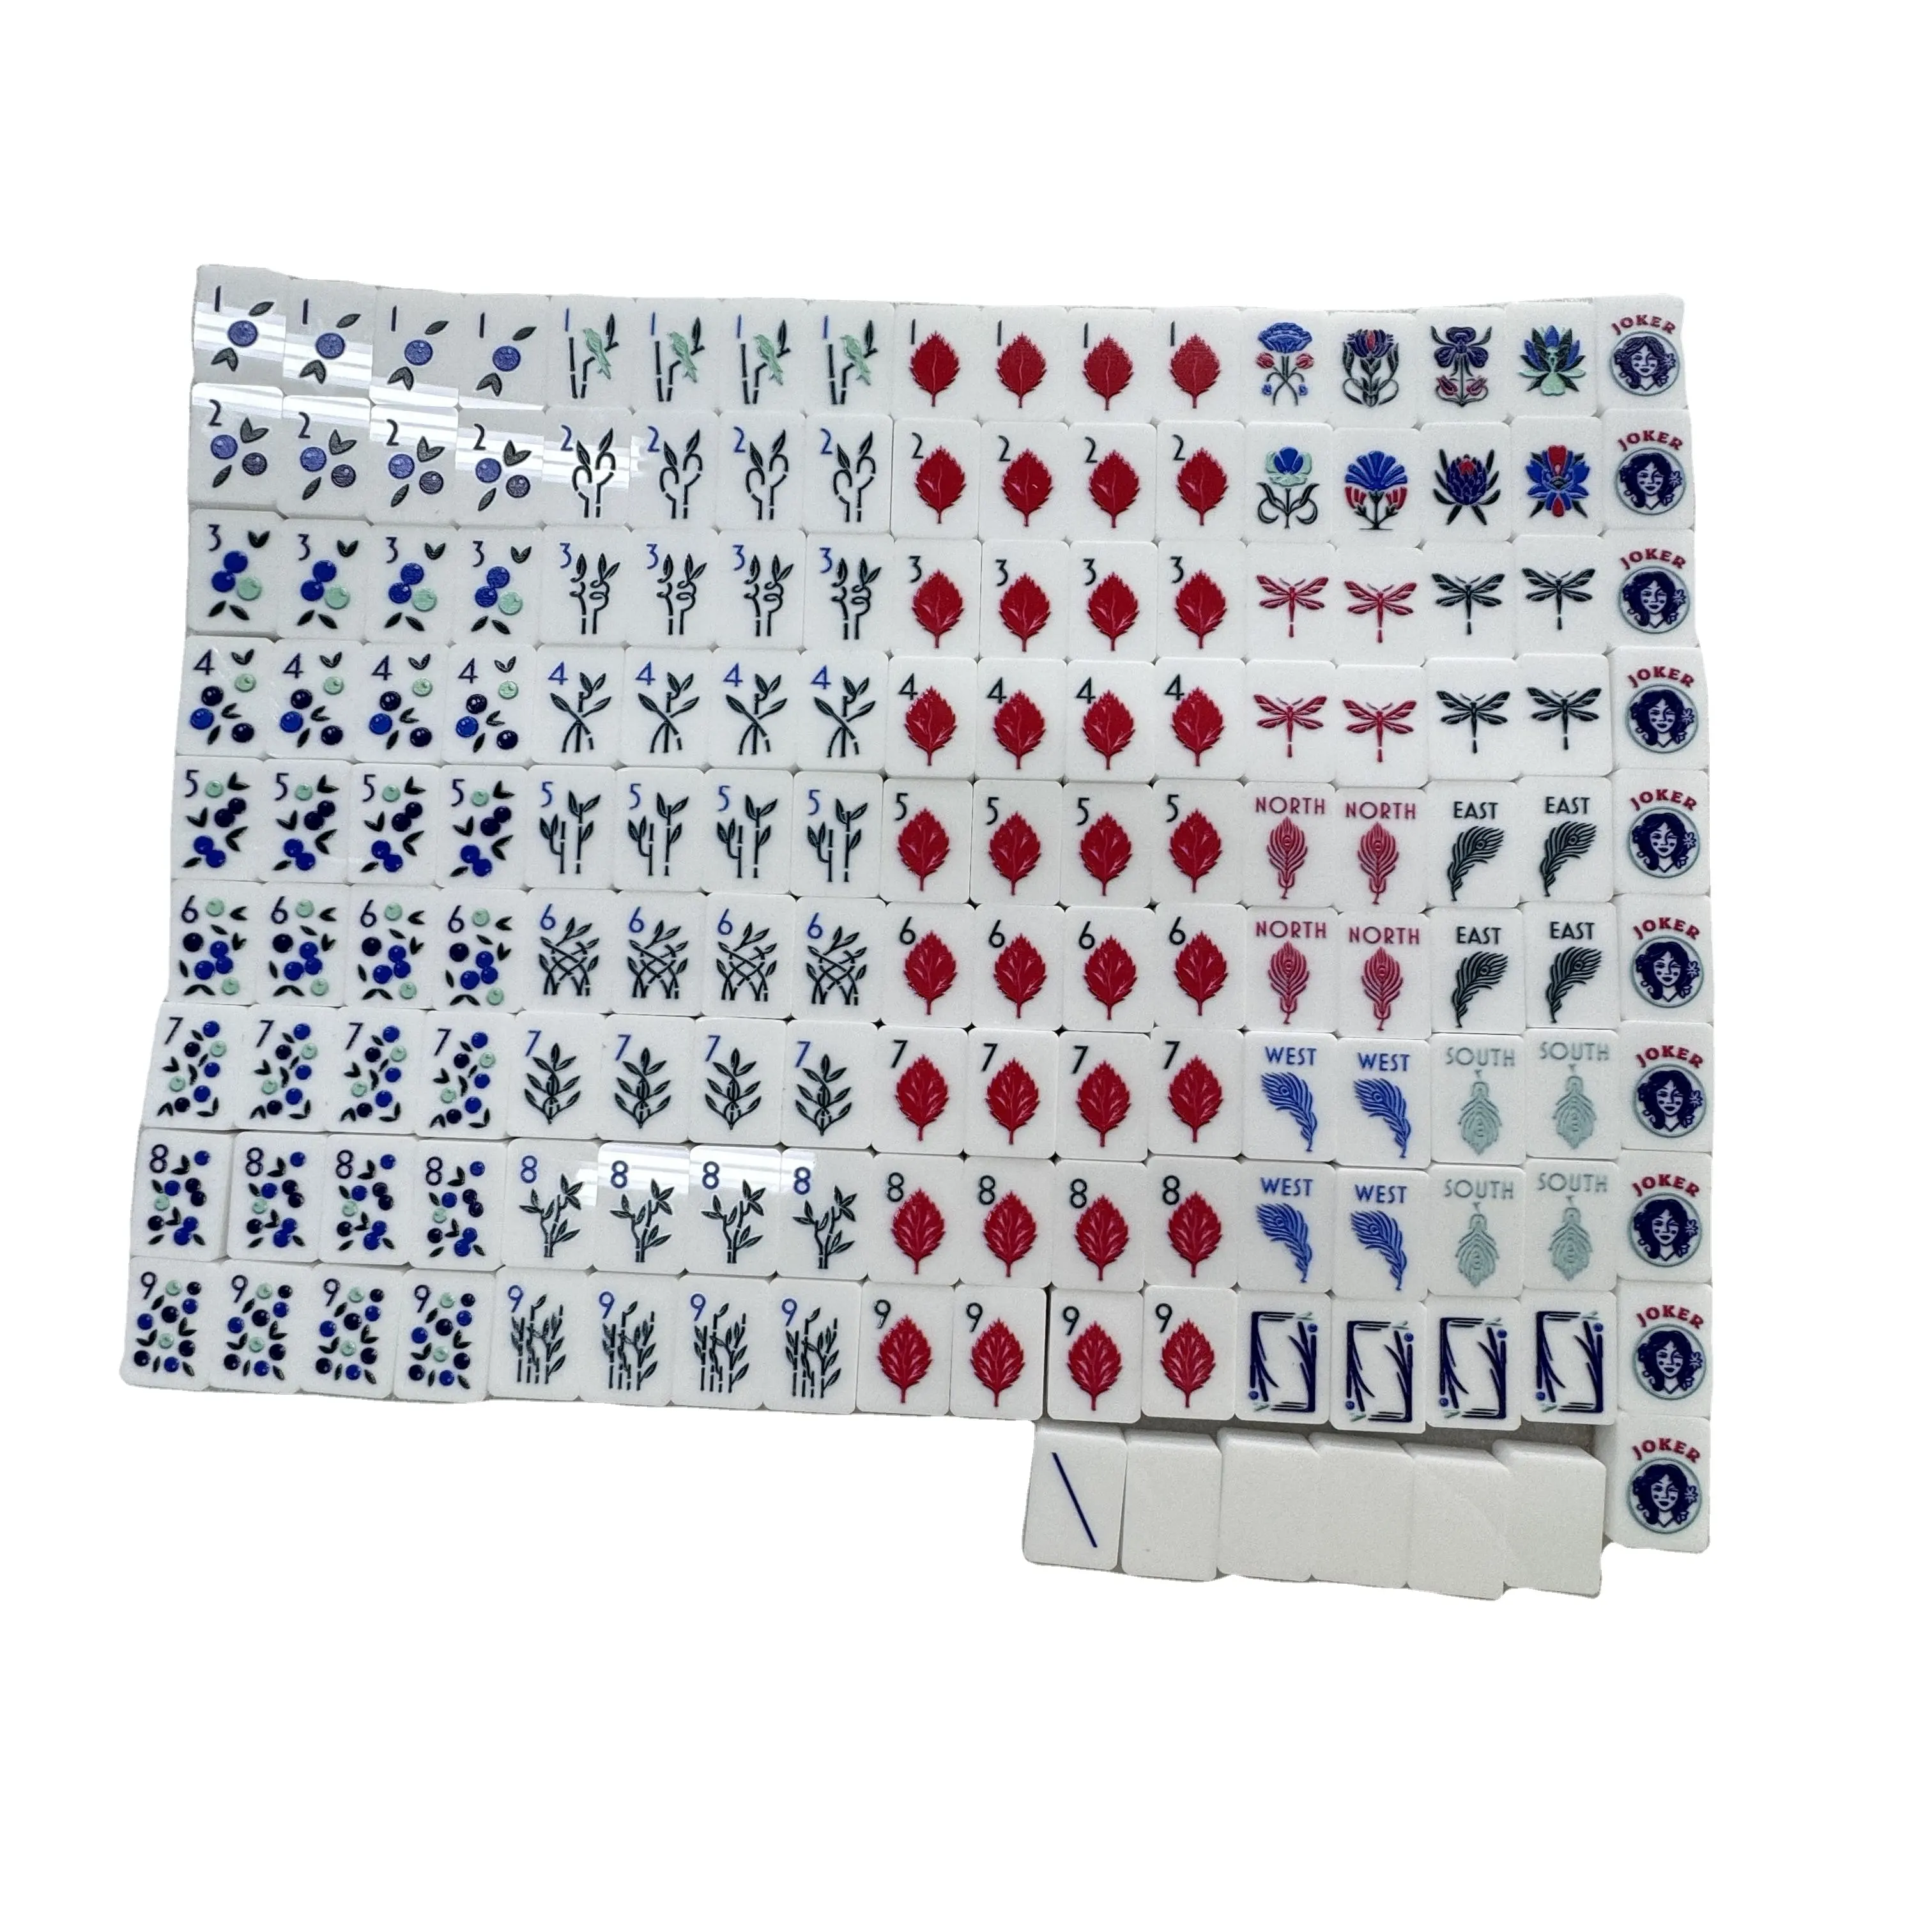 Mattonelle di Mahjong bianche personalizzate in acrilico con scatole portaoggetti Deluxe American Mahjong di cristallo di lusso Mini Mahjong Set per il gioco di viaggio